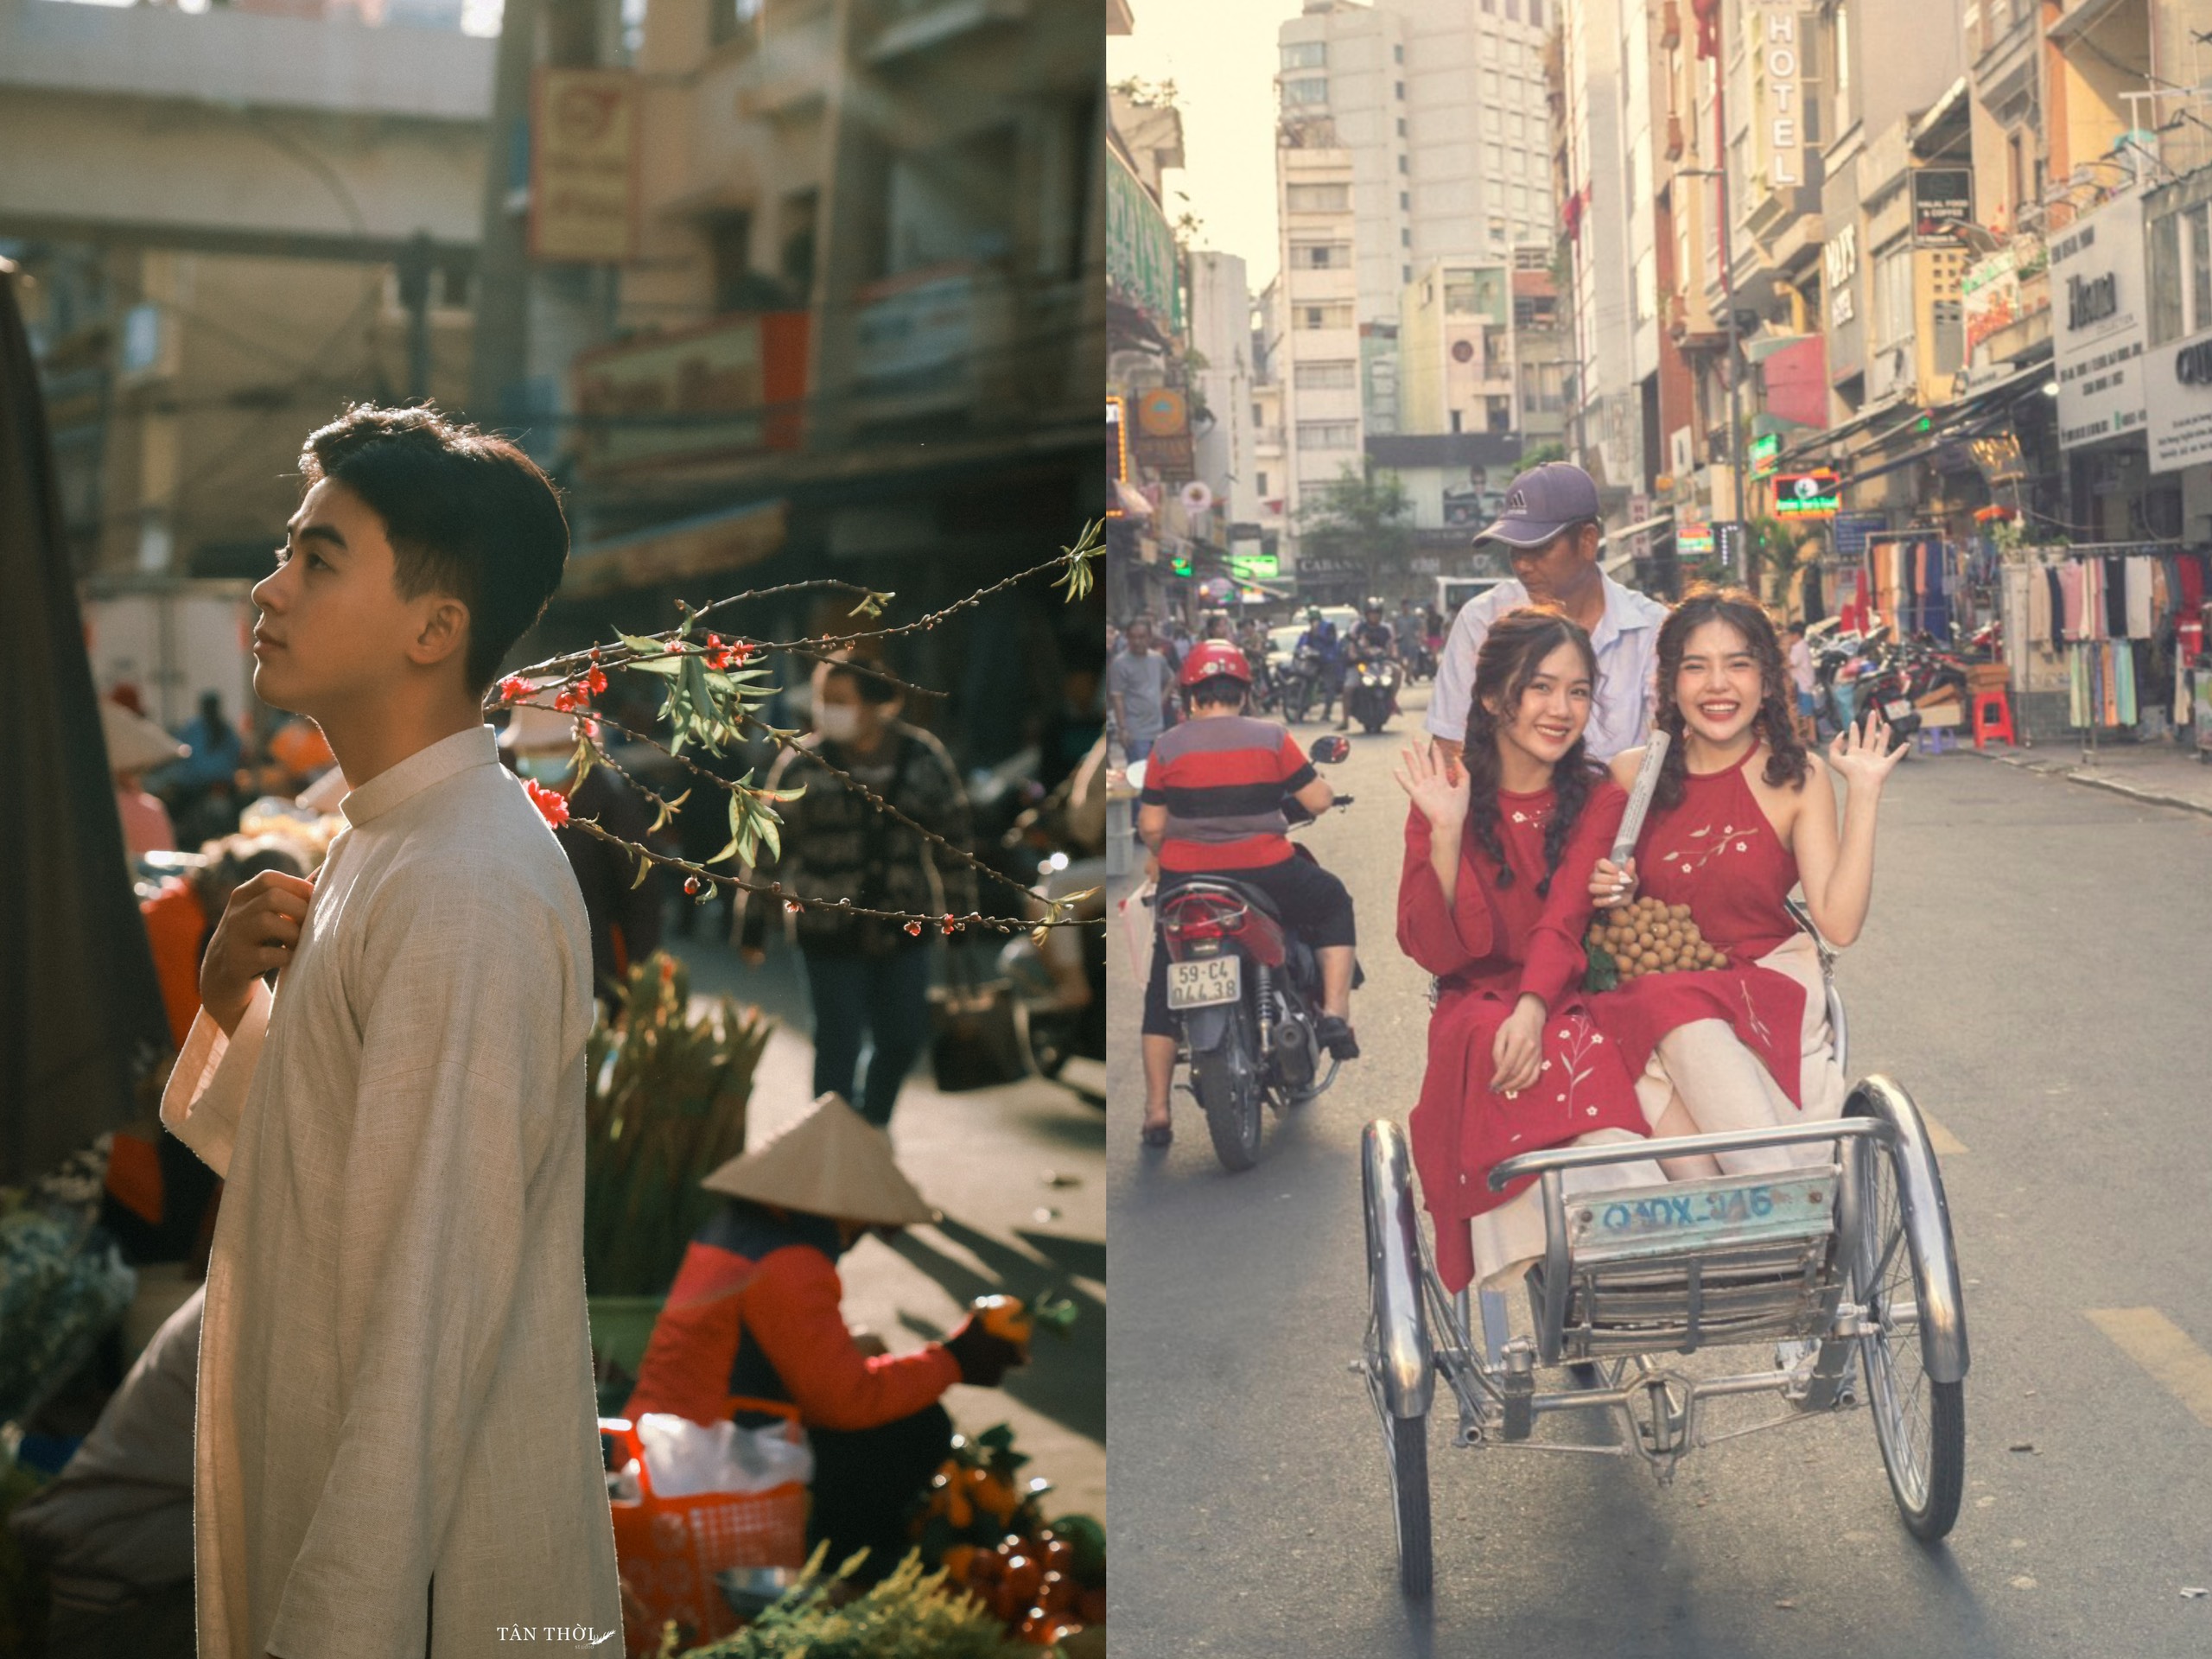 Chụp ảnh Tết thập niên 90: Những bức ảnh chụp Tết thập niên 90 sẽ giúp cho bạn du hành trở lại quá khứ, ngả mũ trước vẻ đẹp cổ điển và cảm nhận được sự đa dạng và sáng tạo của dân tộc Việt. Hãy cùng nhau chiêm ngưỡng những bức ảnh đầy ý nghĩa này.